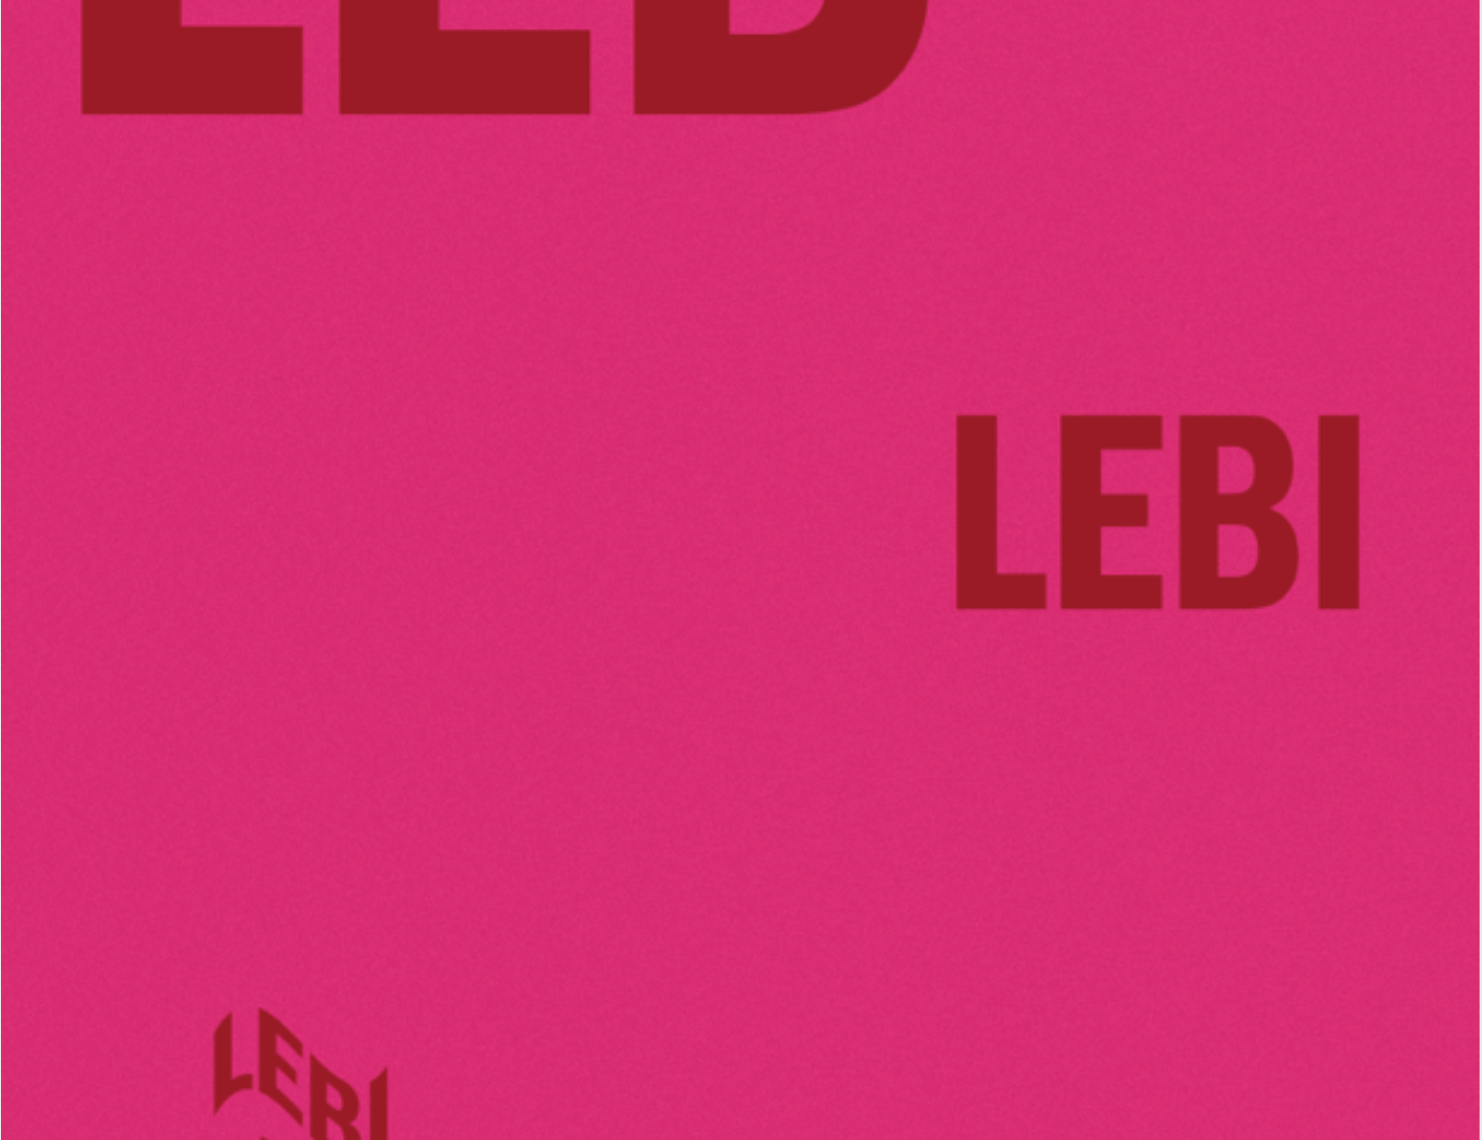 Leb-Lebi